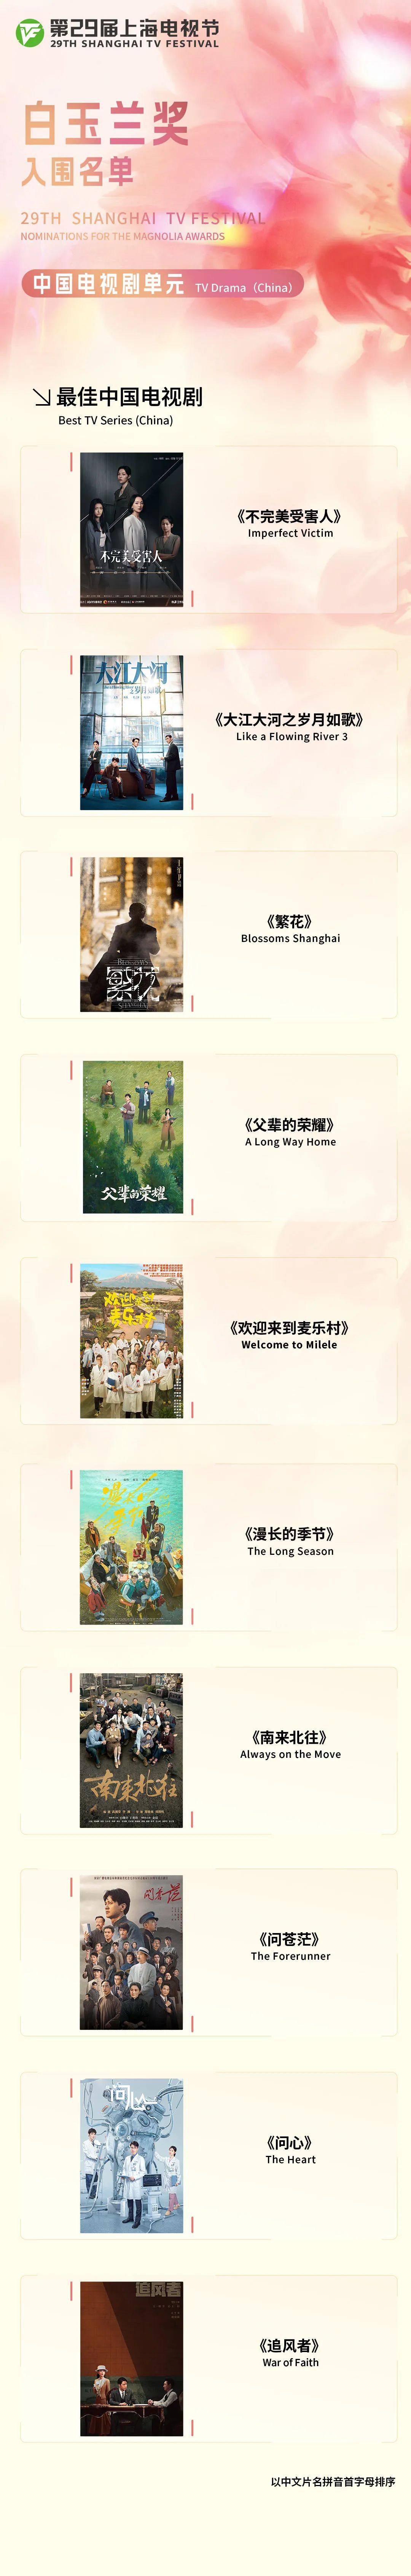 第29届上海电视节白玉兰奖入围名单